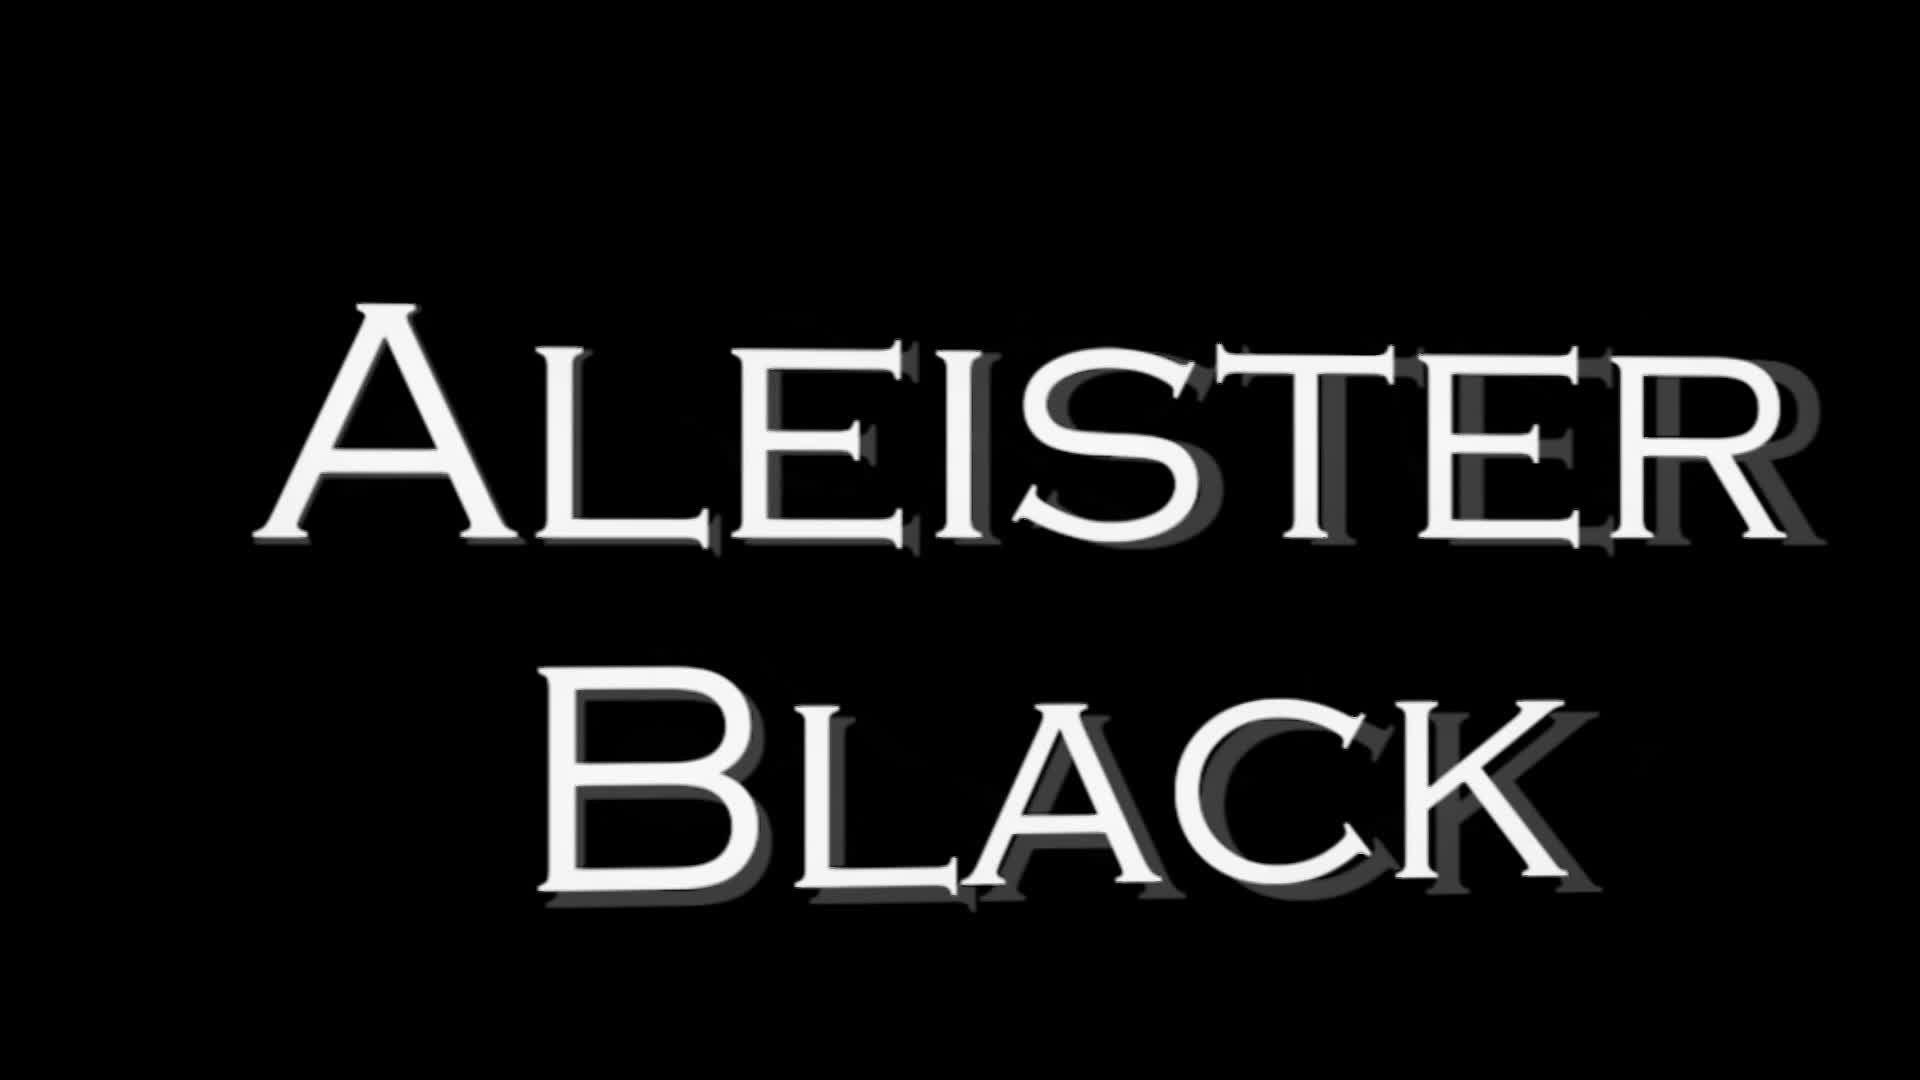 Aleister Black Entrance Video